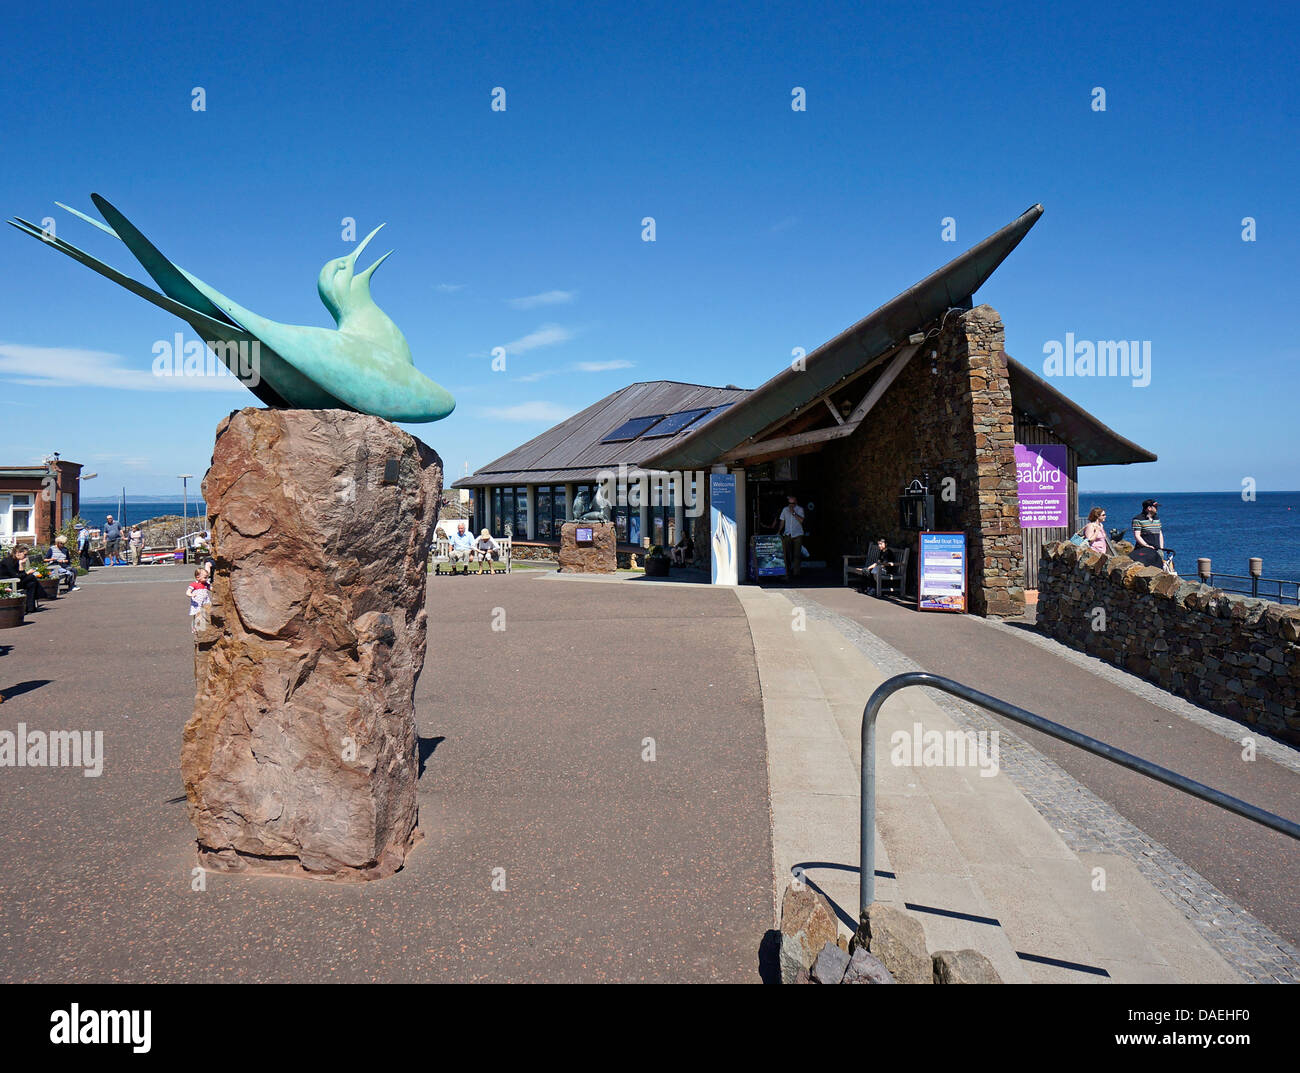 Das Scottish Seabird Centre am Hafen in North Berwick East Lothian Schottland Stockfoto